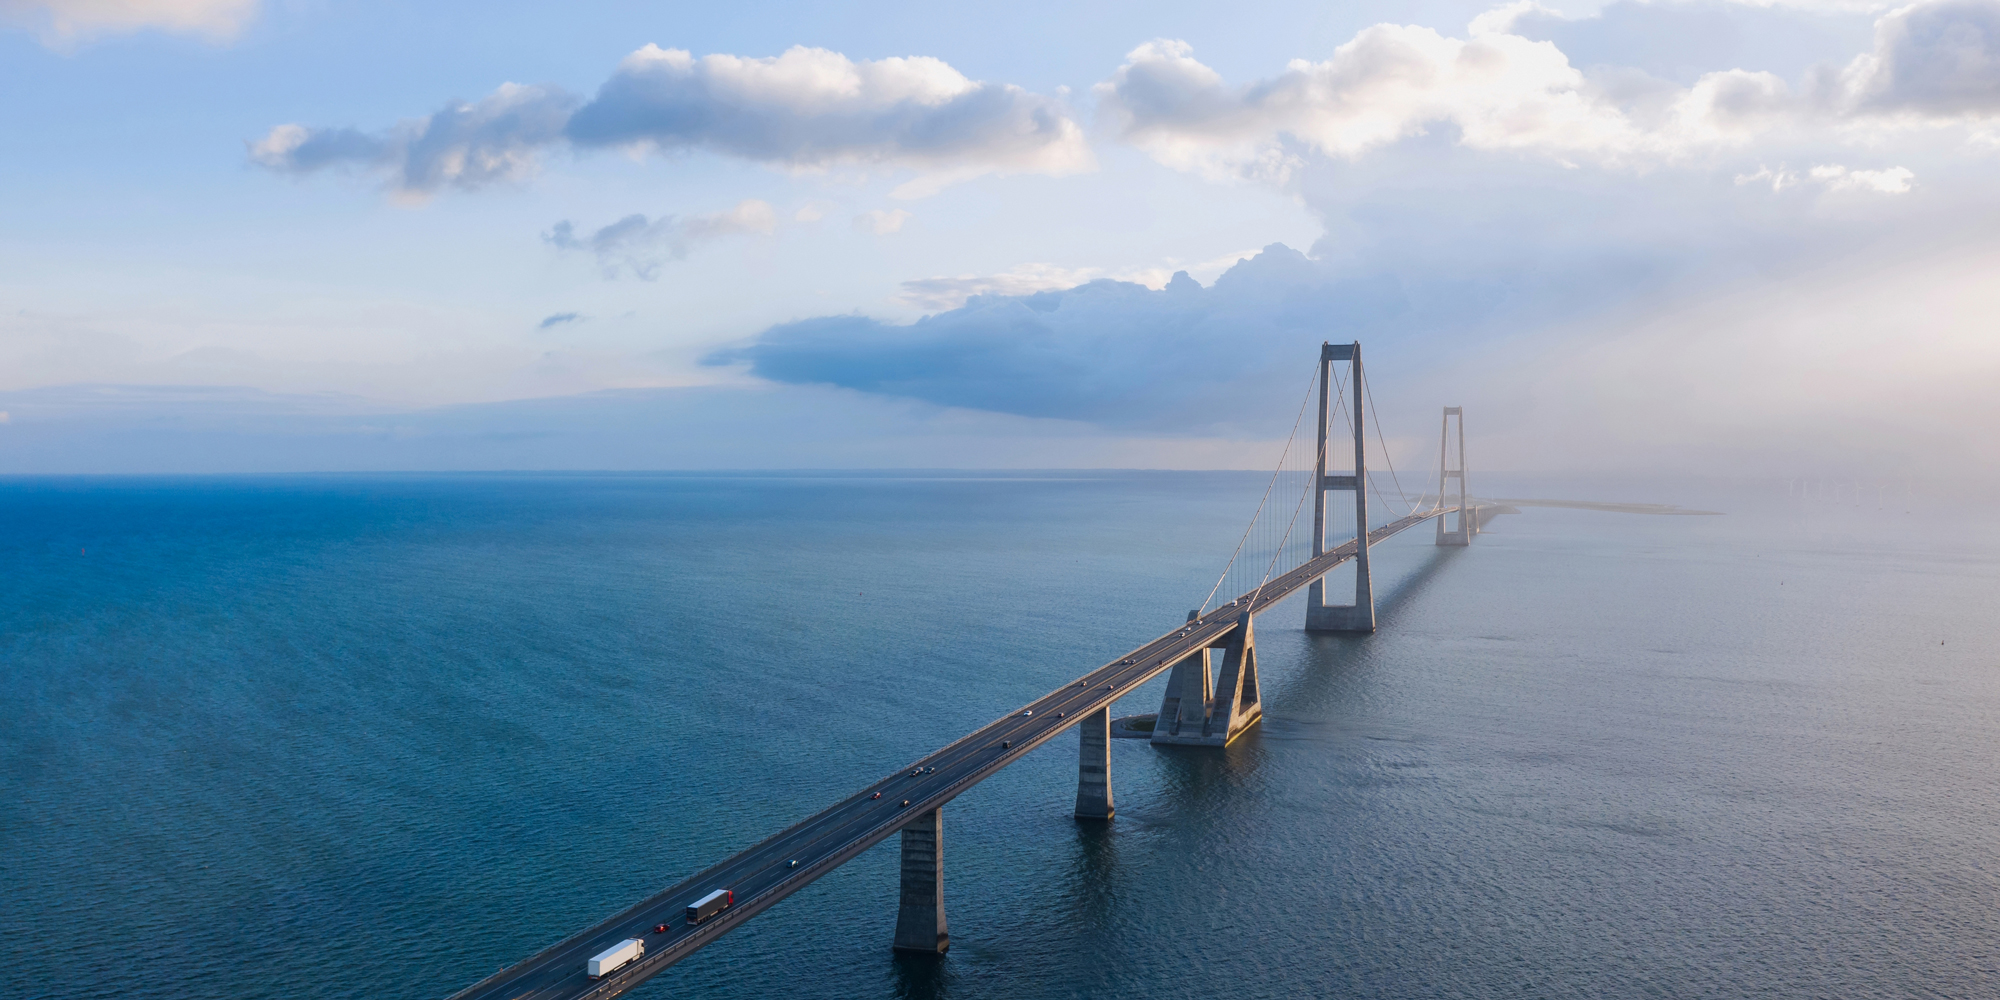 Billede af Storebæltsbroen, som opdeler Danmark i Øst og Vest, når det kommer til prisområder i forhold til strøm og elpriser